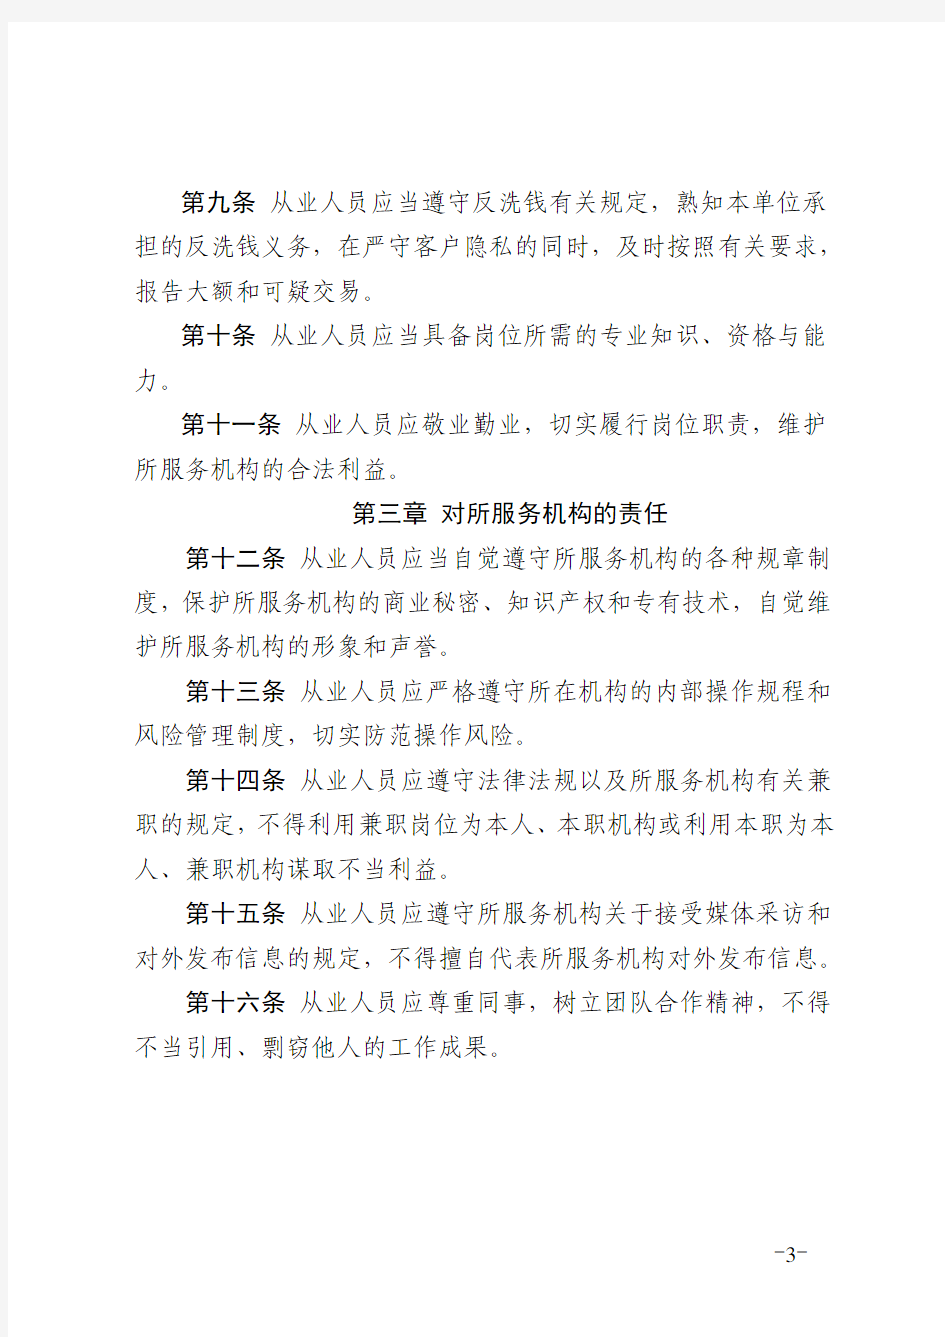 支付清算行业从业人员职业道德规范-中国支付清算协会